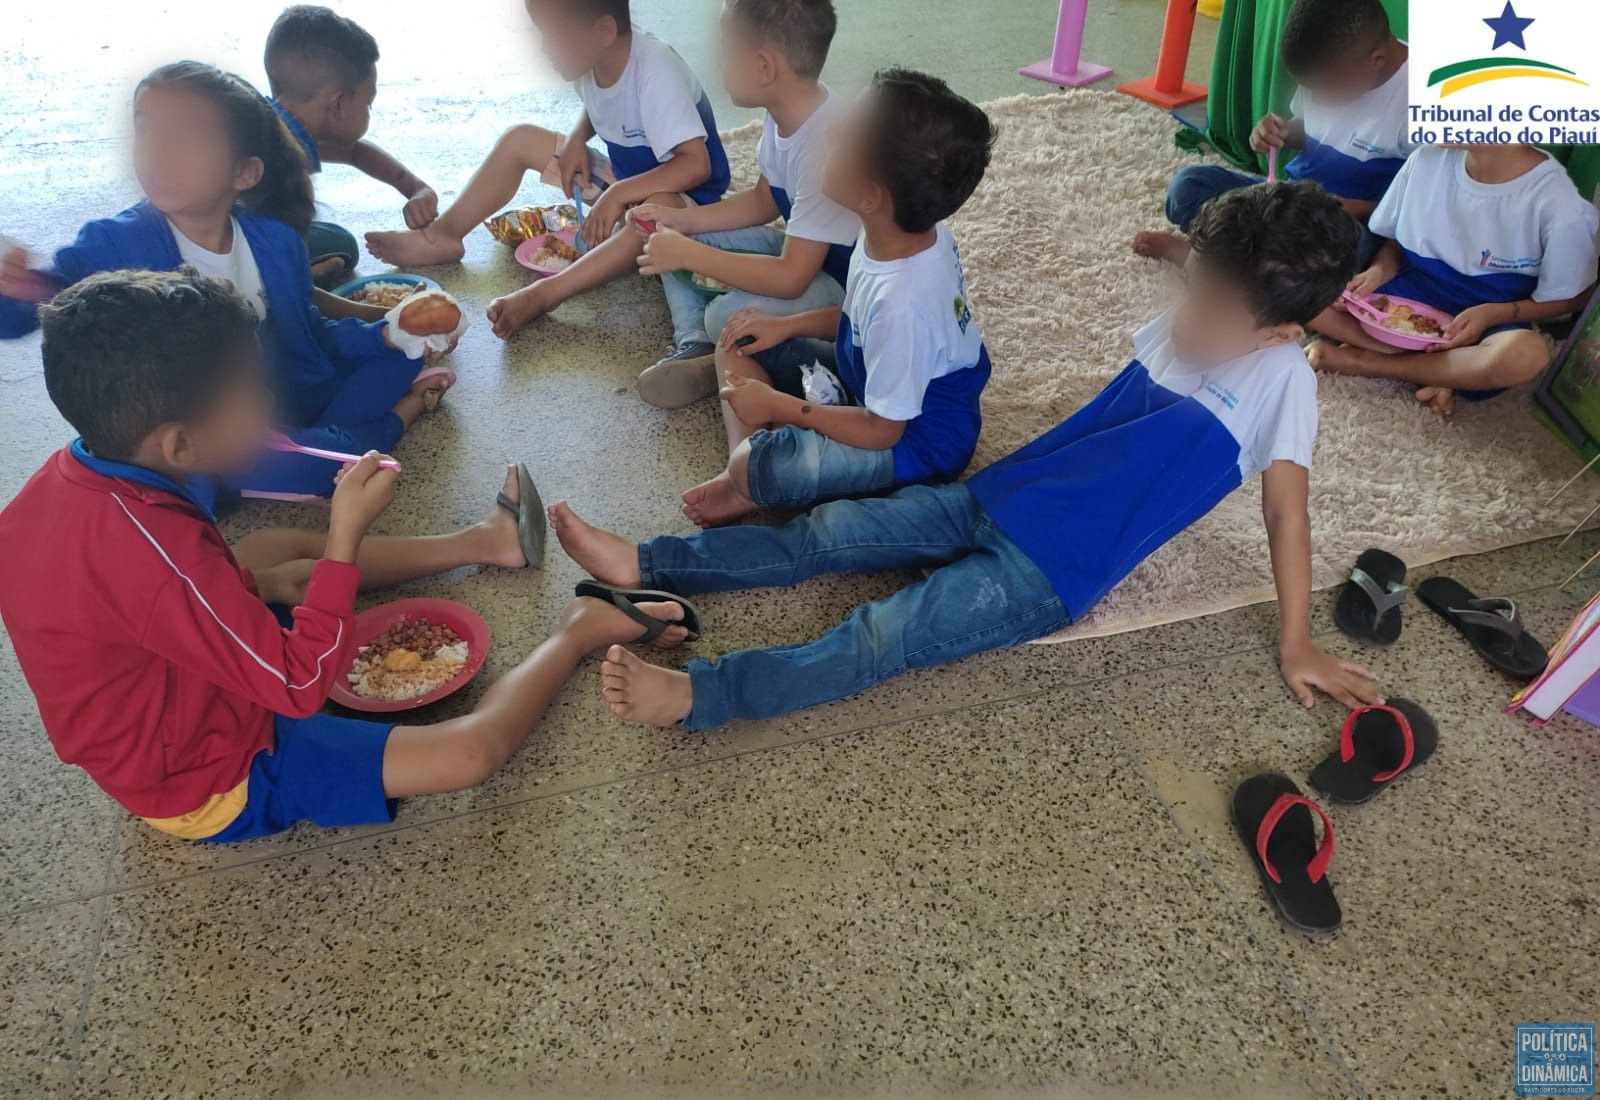 Crianças são obrigadas a comer no chão por falta de refeitório em escola de município do Piauí (foto: Divulgação)